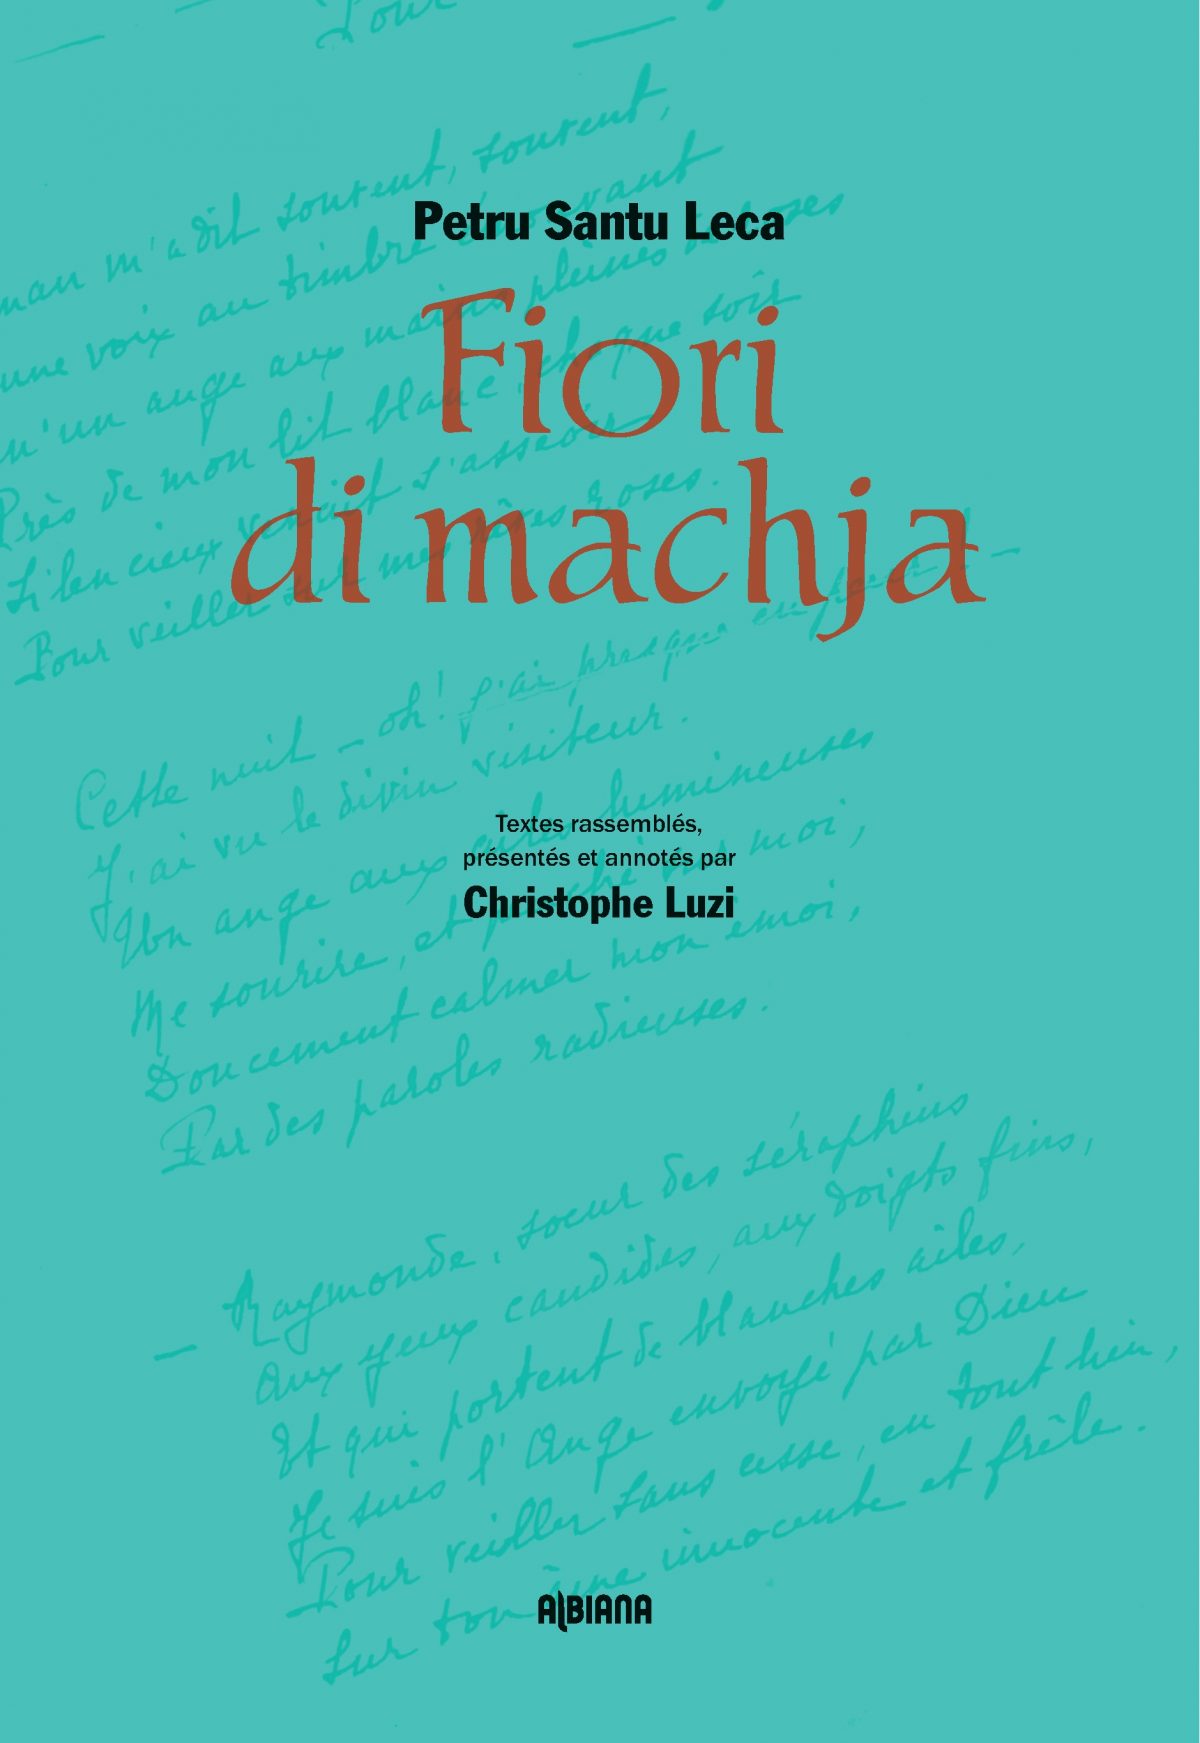 Fiori di Machja, autour de l’œuvre du poète corse Petru Santu Leca (1879-1951), Ajaccio : Editions Albiana, 2017.